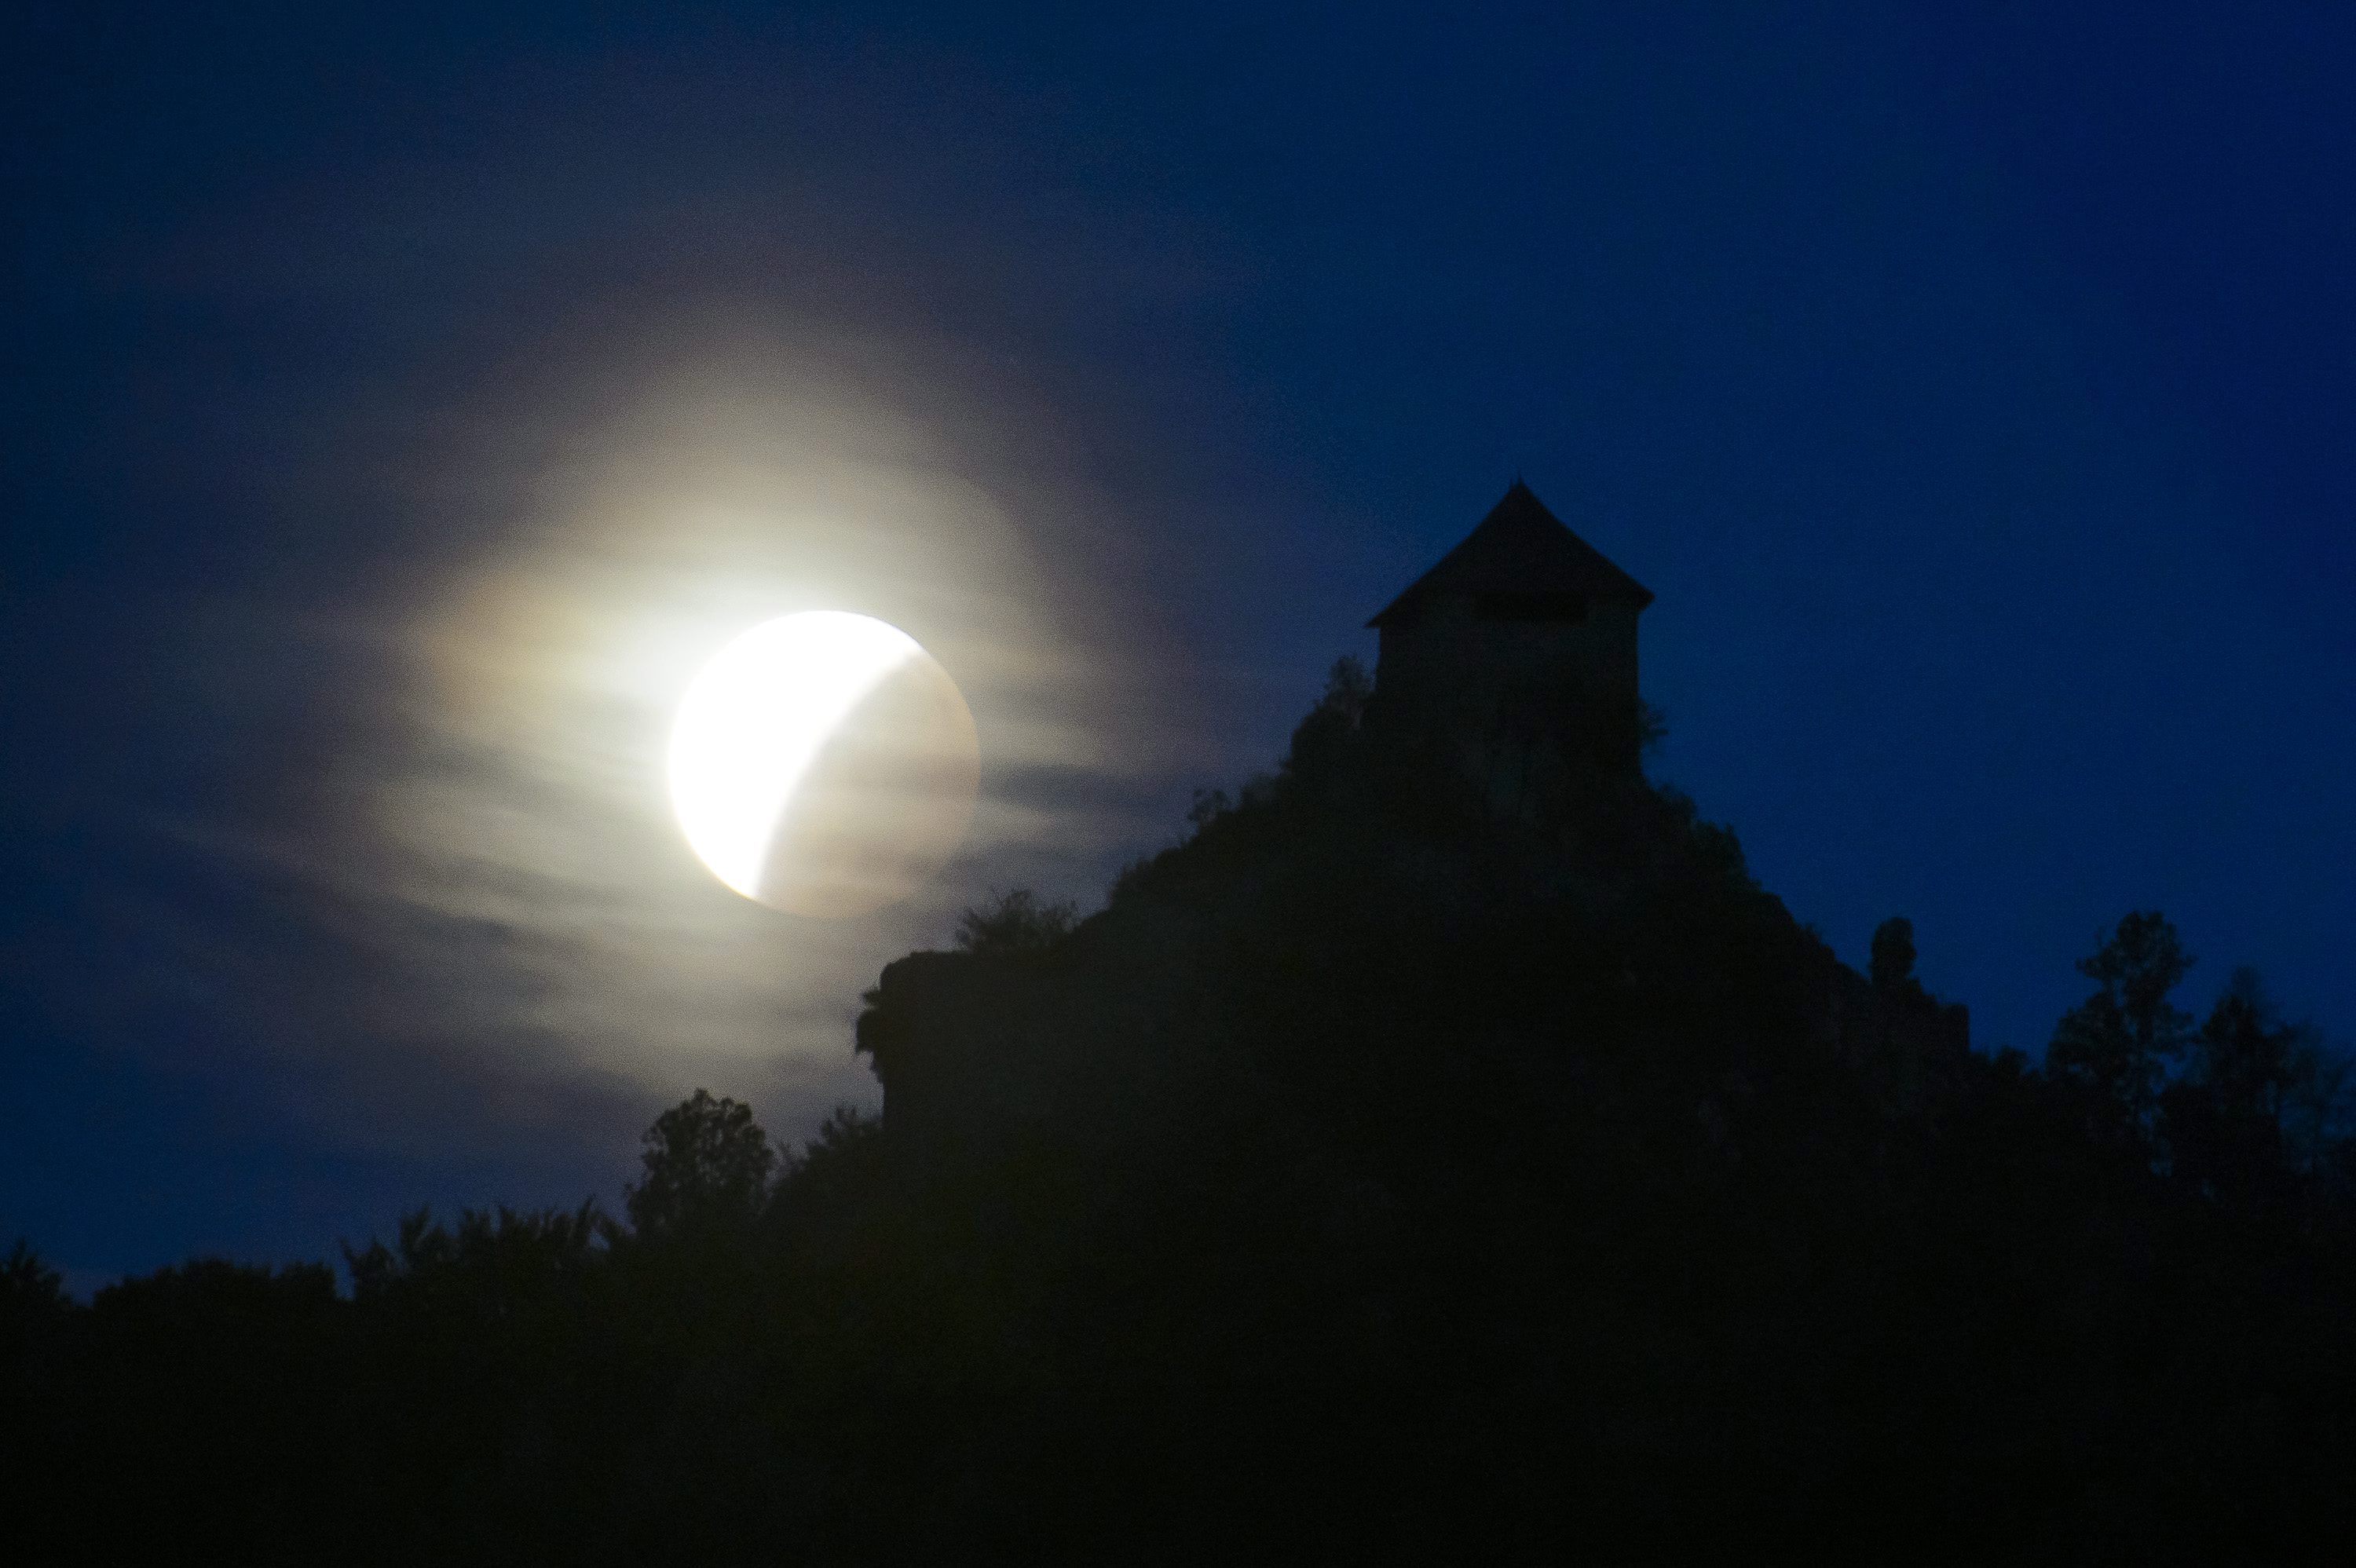 Holdfogyatkozás látszik a salgói vár mellett Salgótarján Salgóbánya városrészébõl fotózva 2015. szeptember 28-án